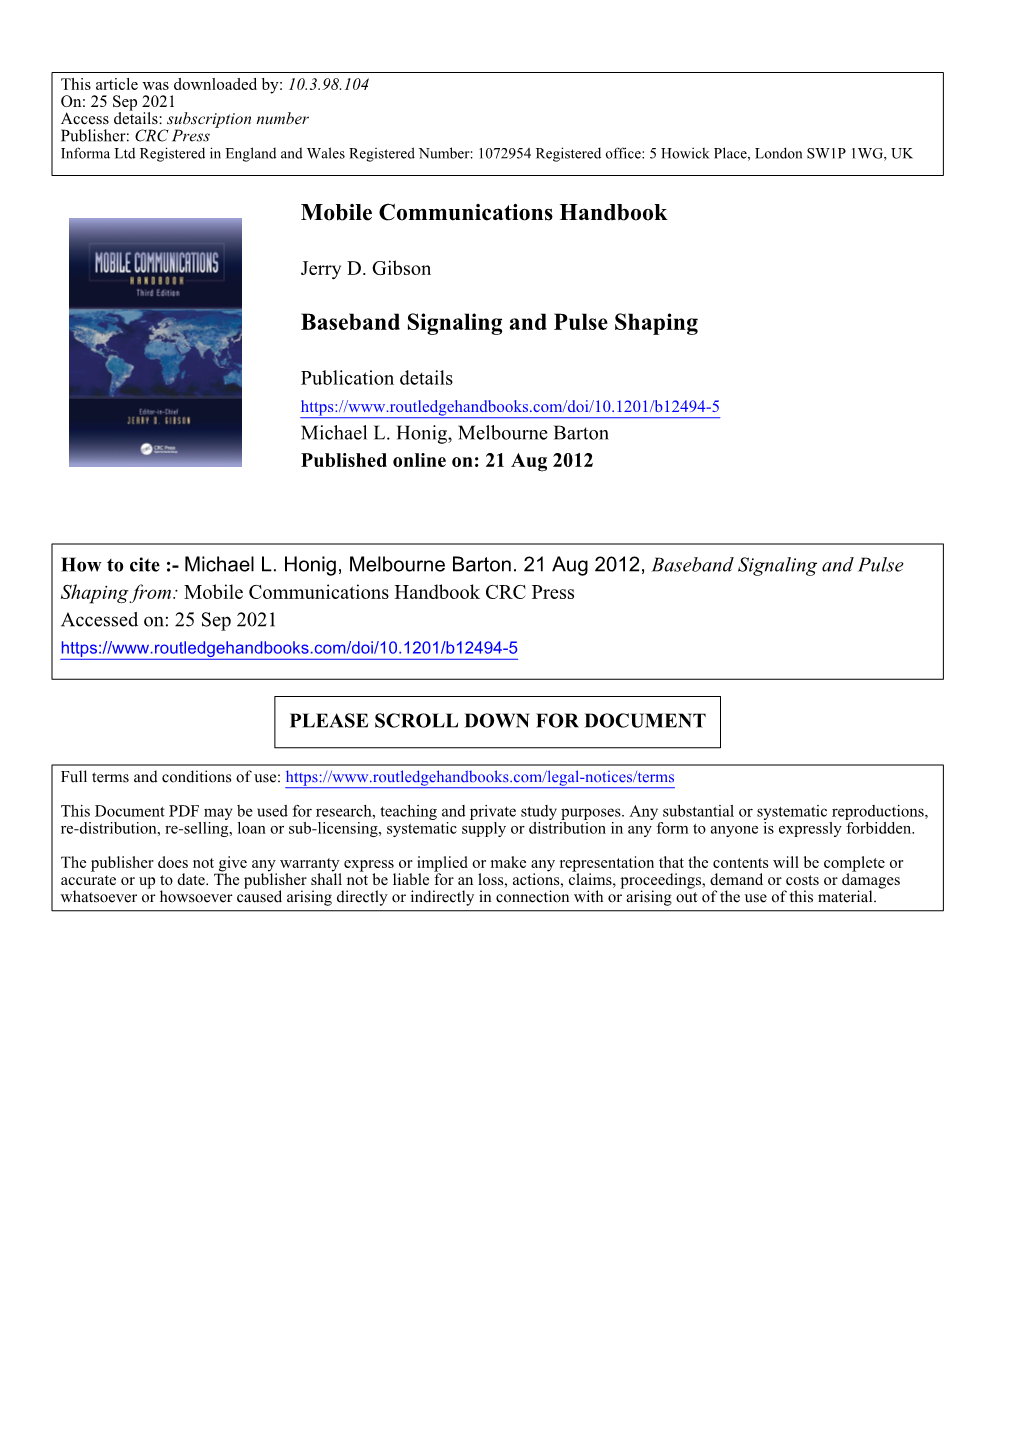 Mobile Communications Handbook Baseband Signaling and Pulse Shaping